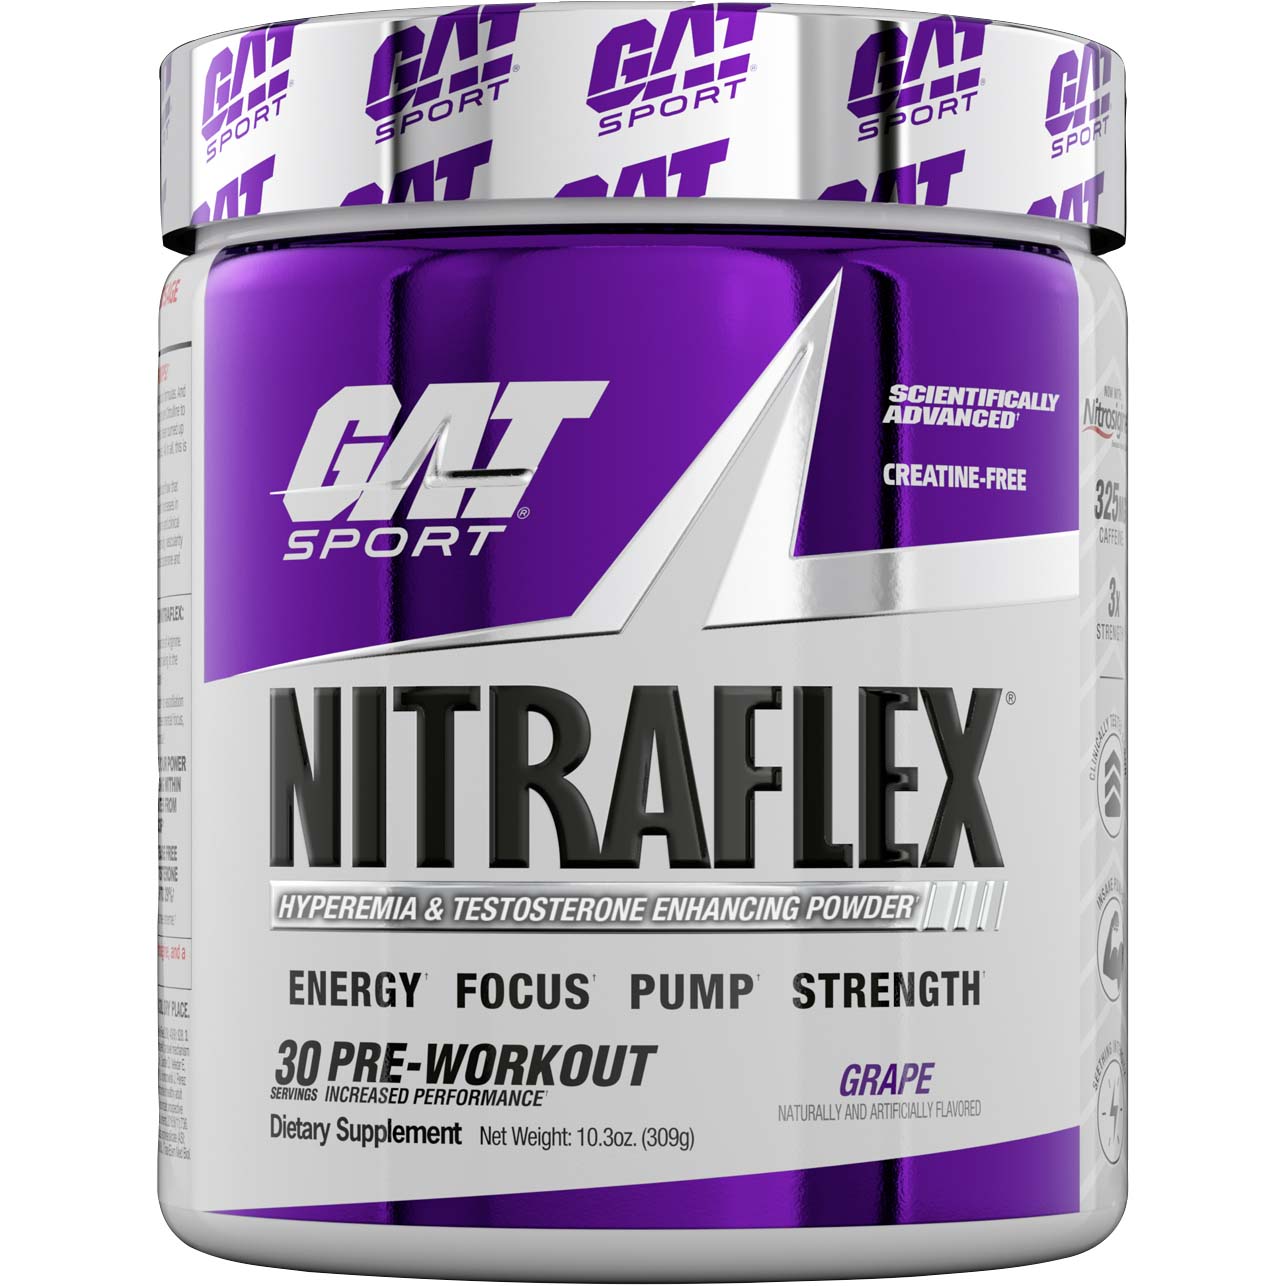 Gat Sport Nitraflex Testosterone Boosting Powder 30 Grape